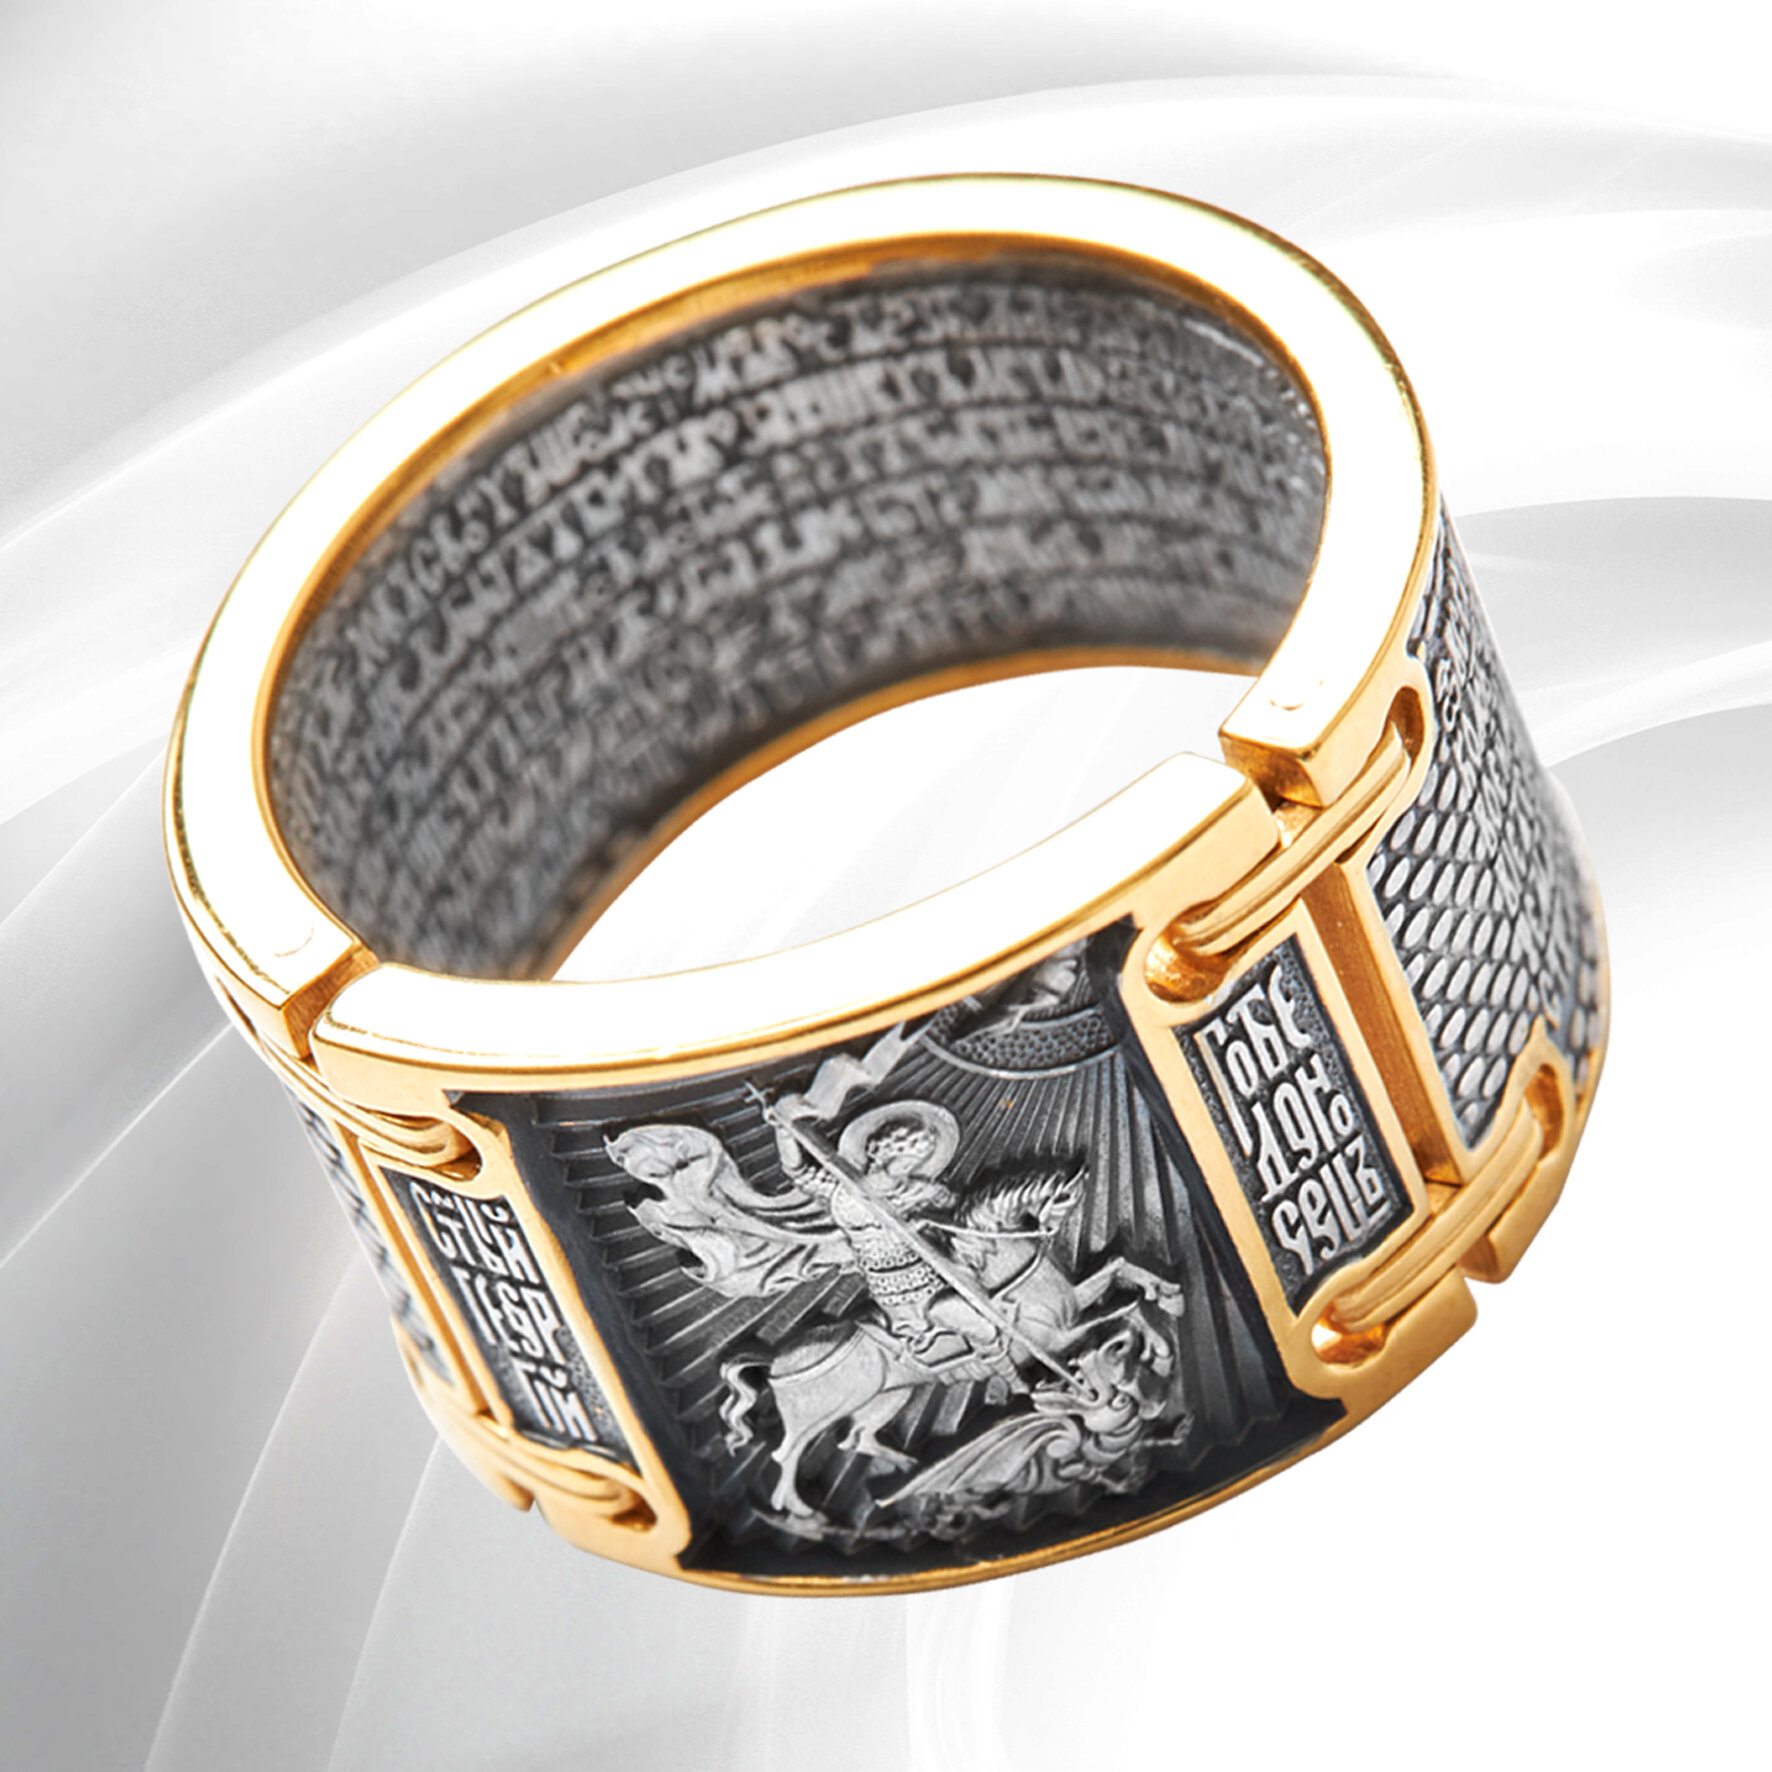 Перстень серебряный мужской кольцо православное широкое с золочением " Георгий Победоносец" амулет ручной работы